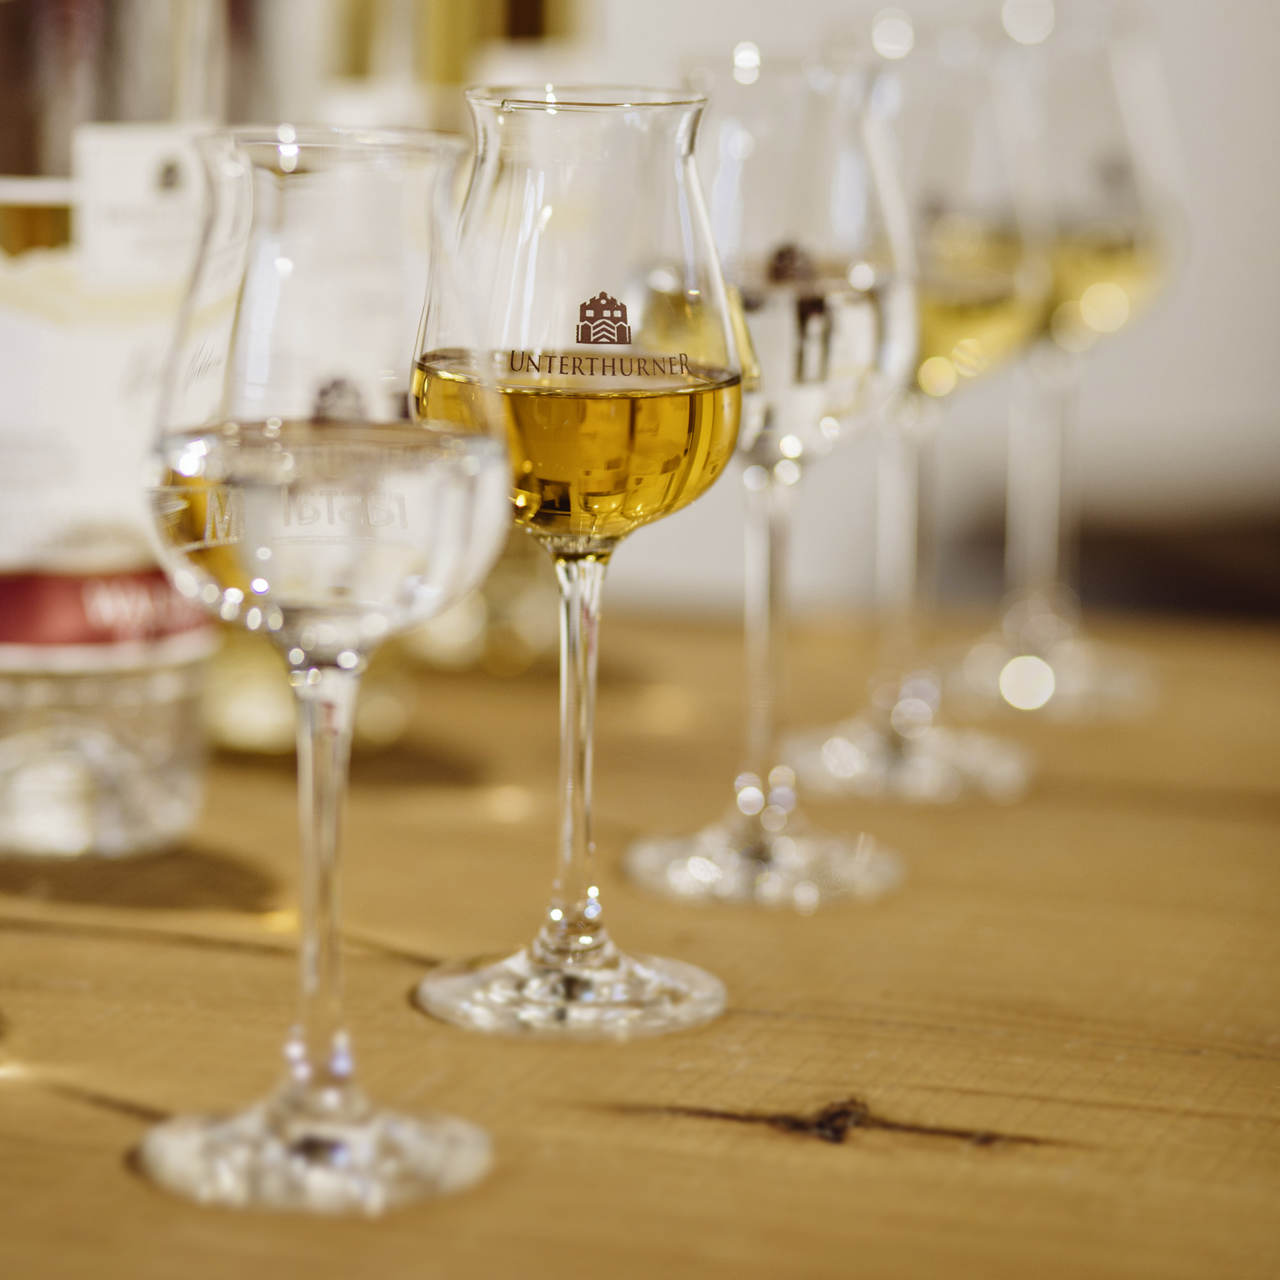 La grappa ha una lunga tradizione in Trentino Alto Adige. La nostra grappa viene ottenuta esclusivamente da vinacce dell’Alto Adige. Distillatori per passione!